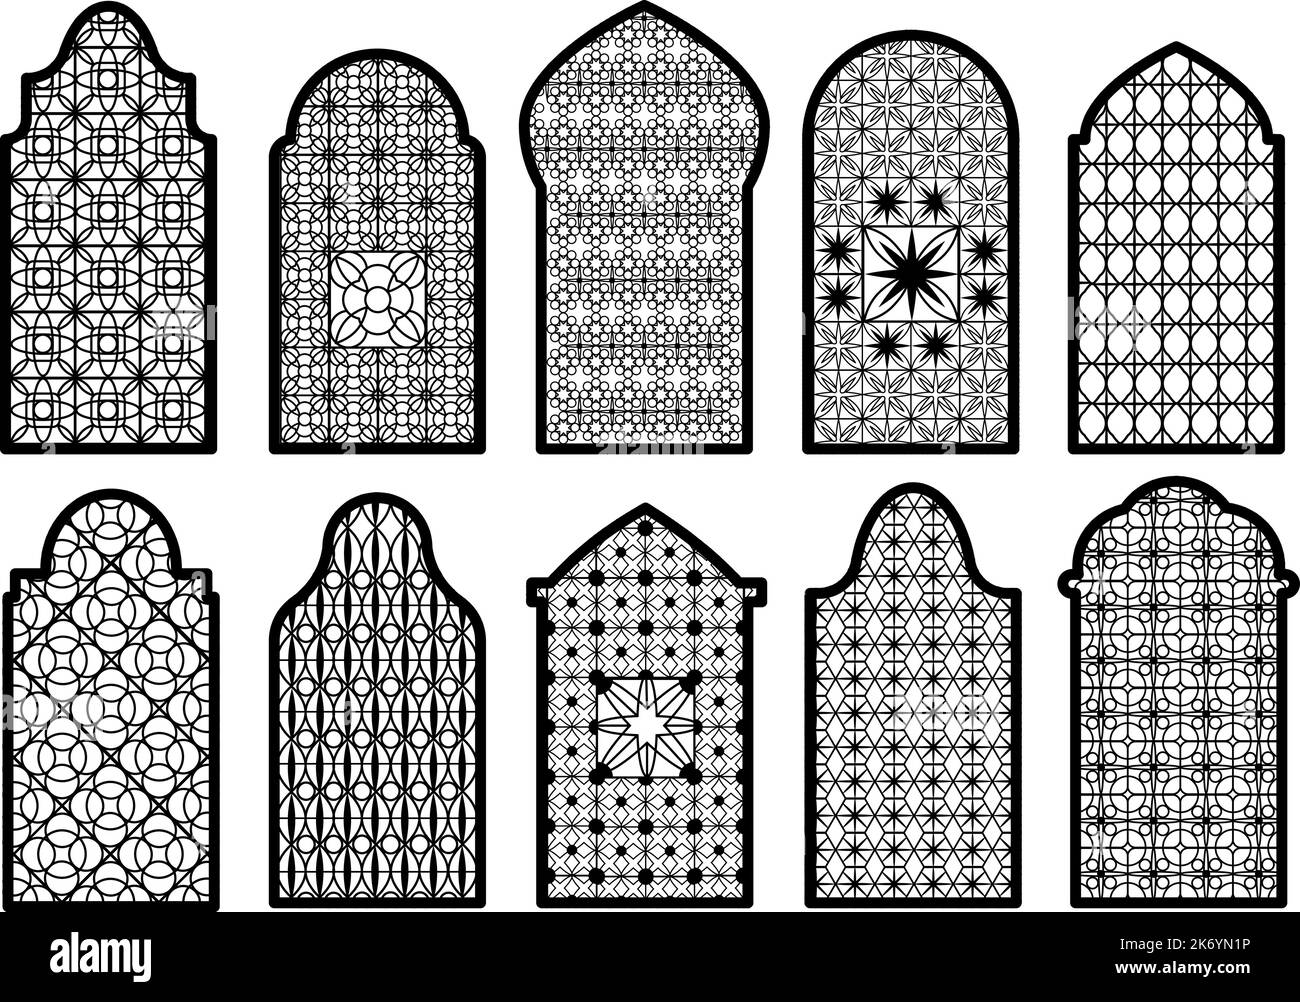 Puertas árabes islamicas fotografías e imágenes de alta resolución - Alamy